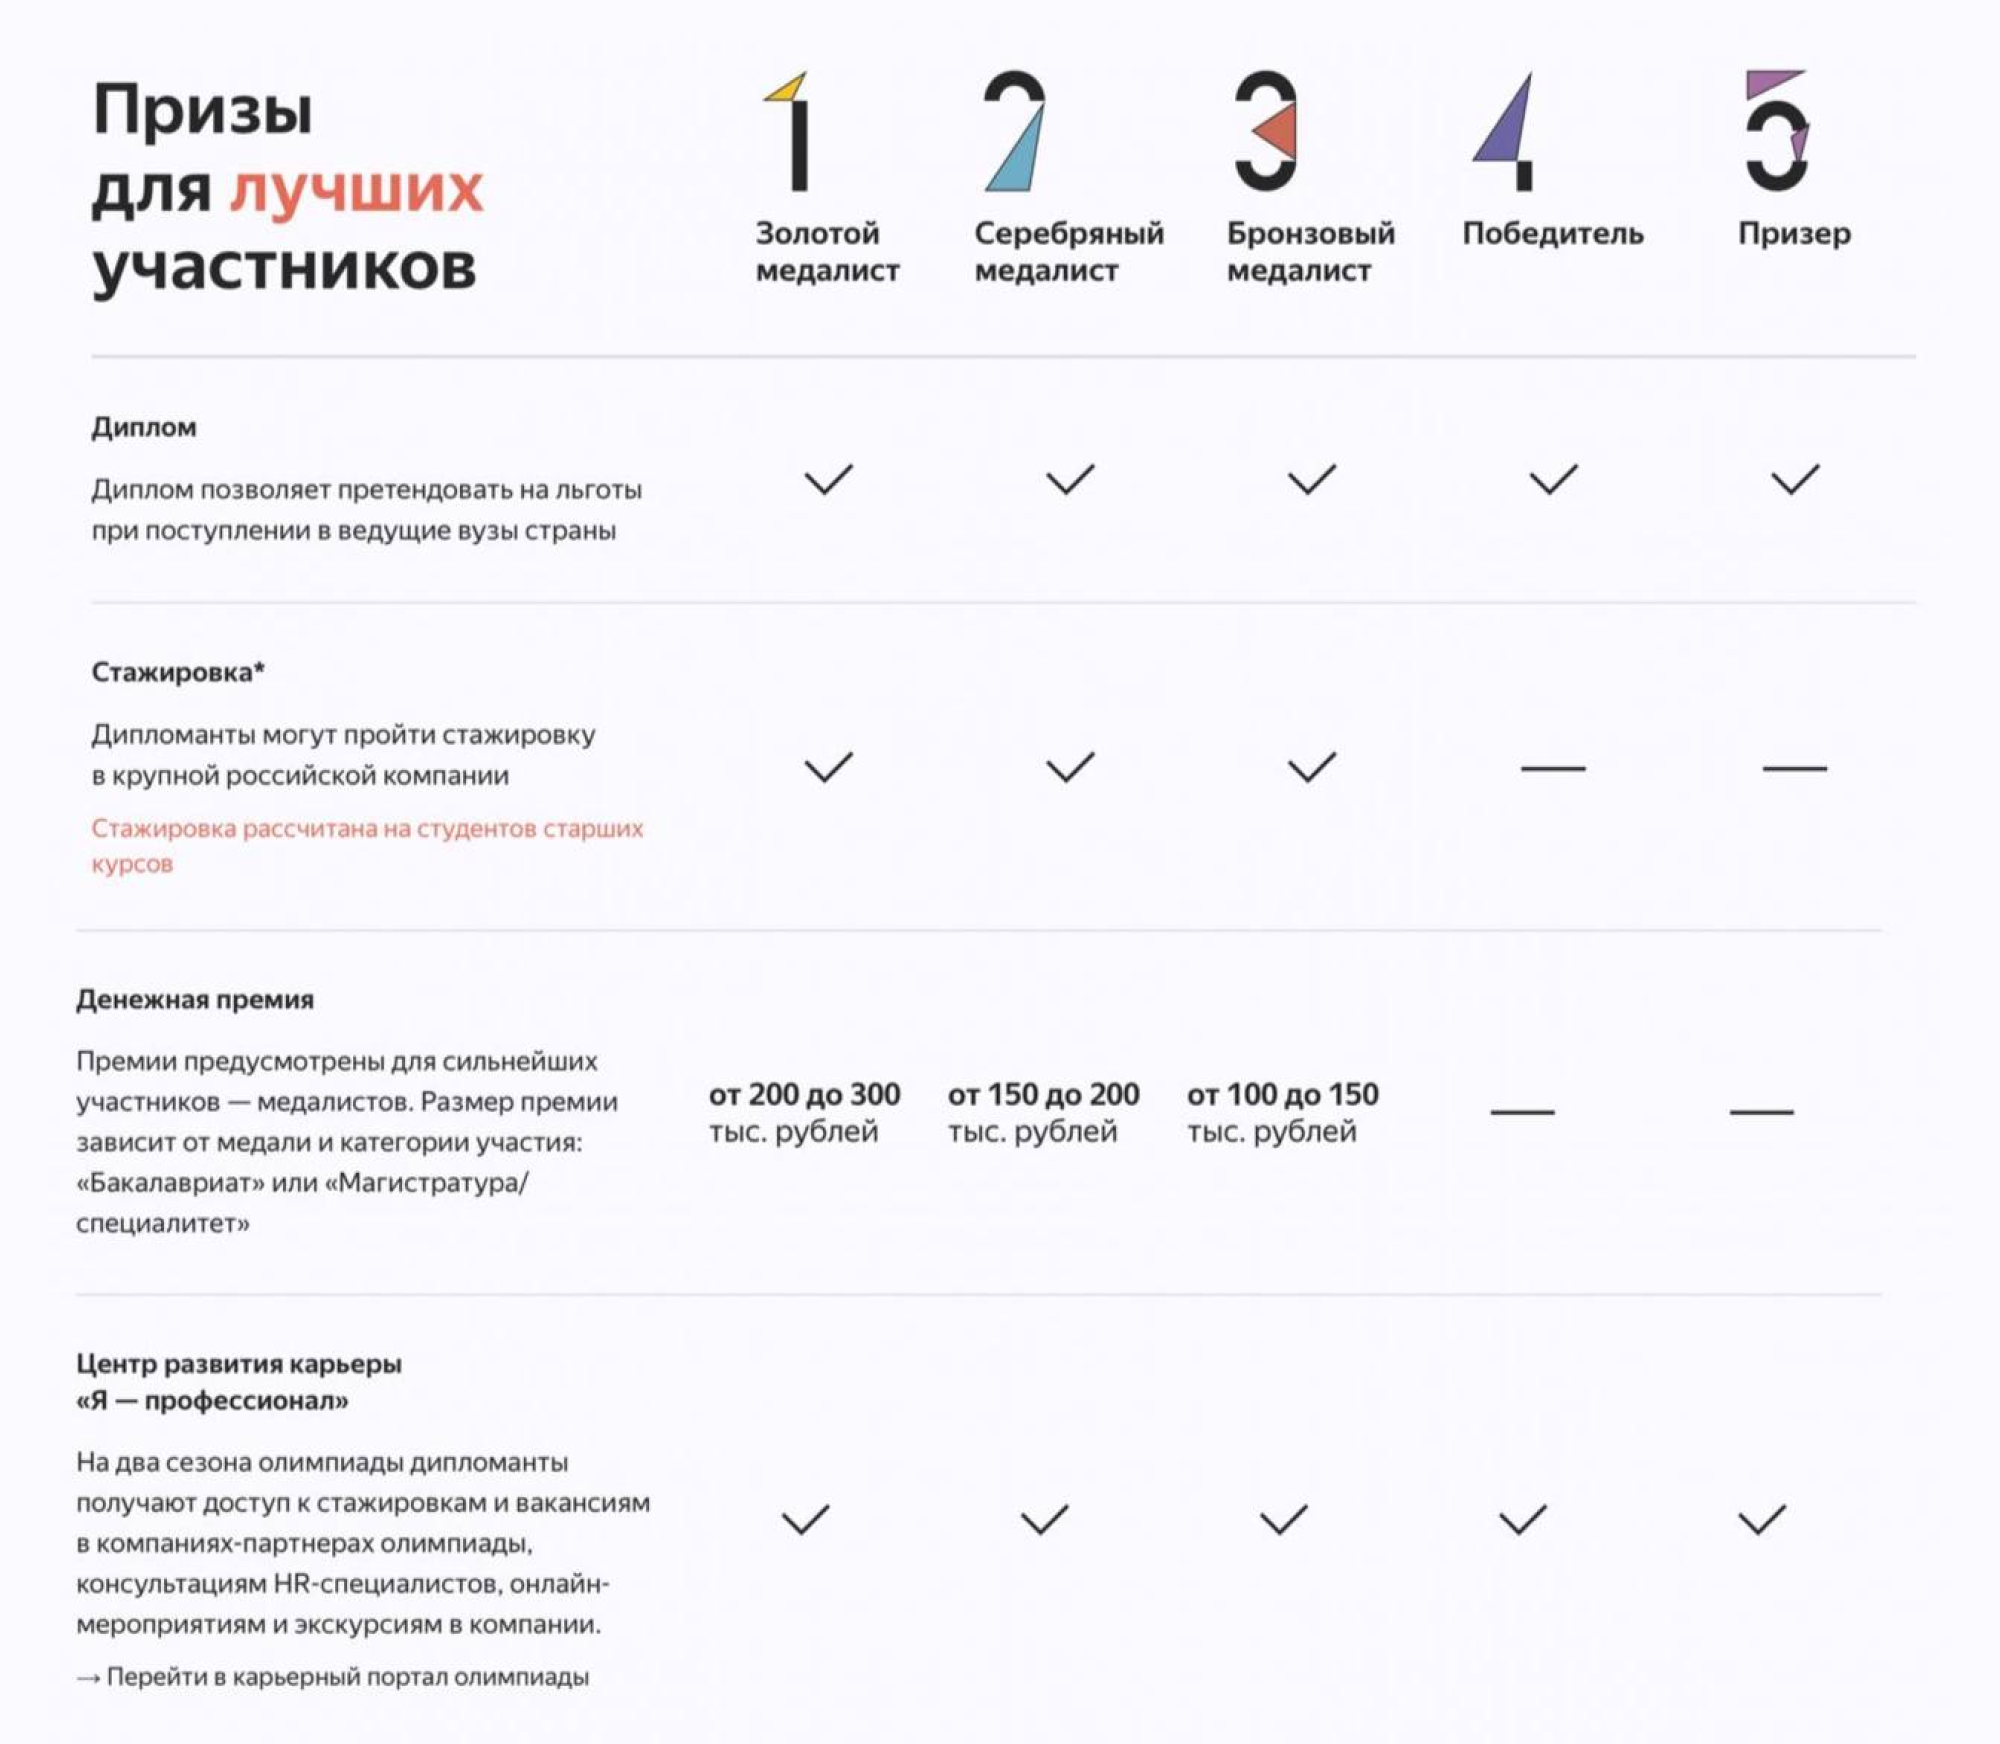 Таблица с распределением наград по призовым местам. Источник: «Яндекс»